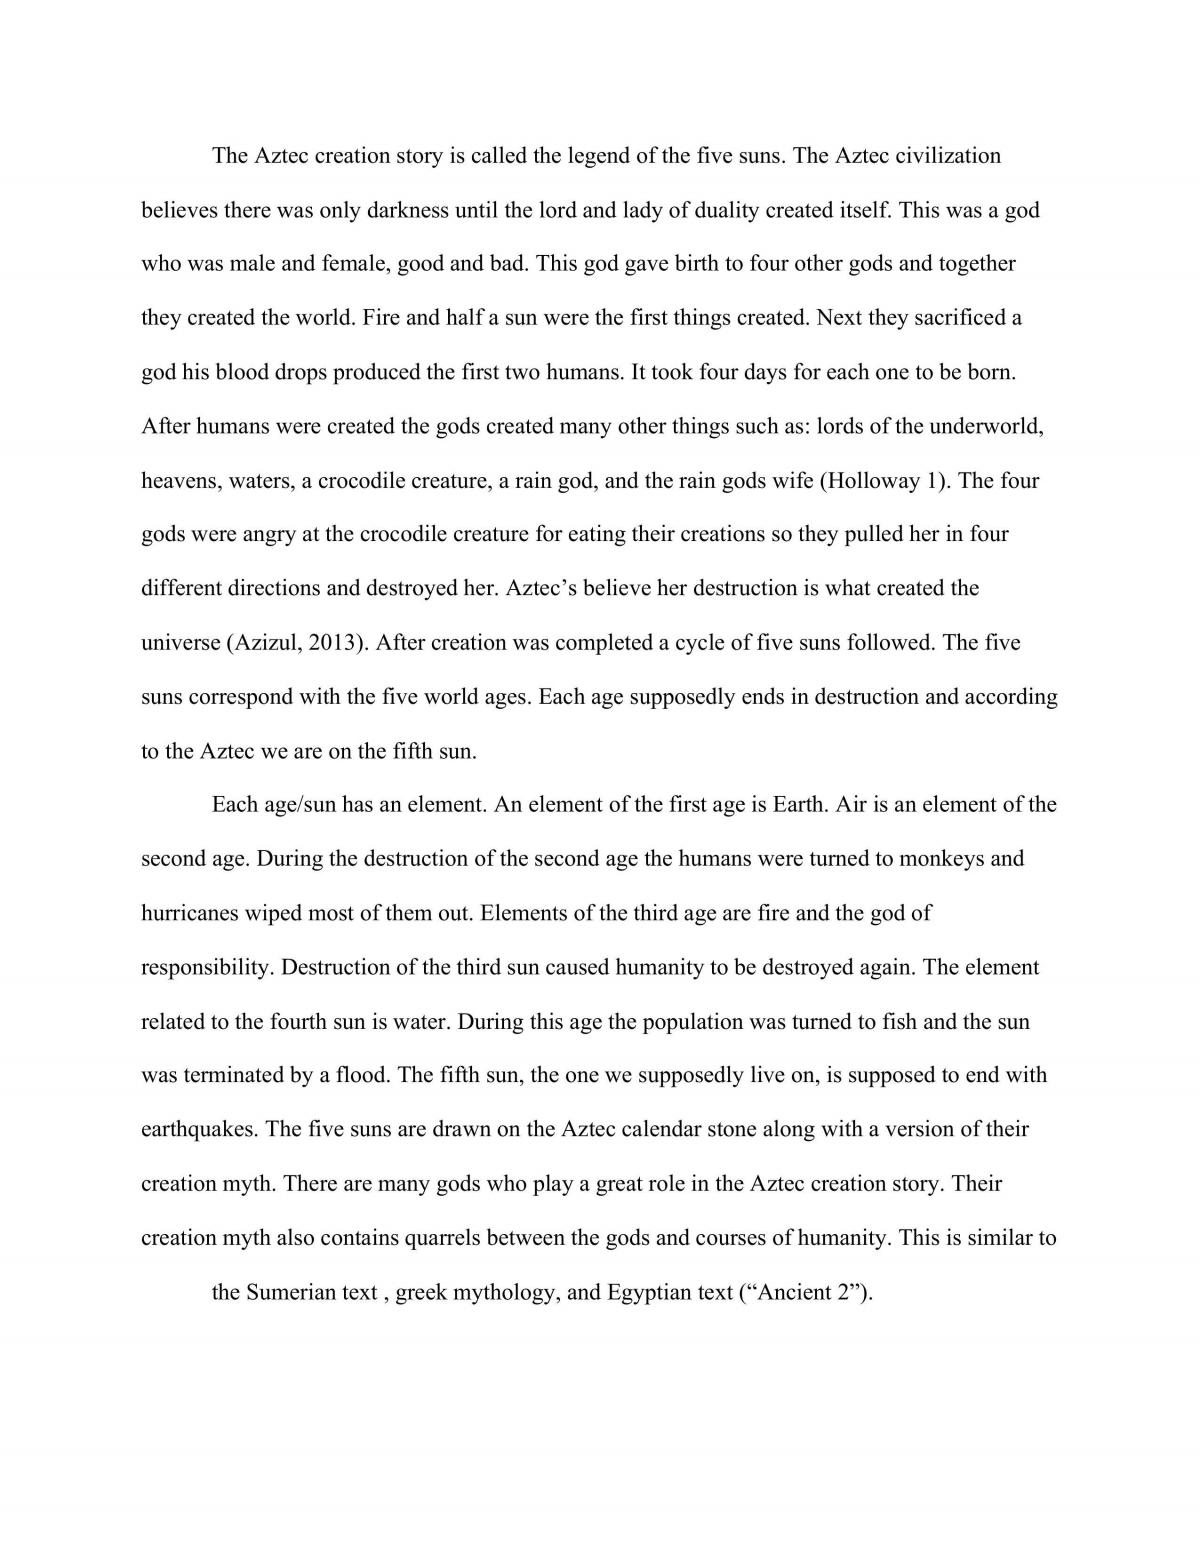 The Aztec Civilization essay - Page 1